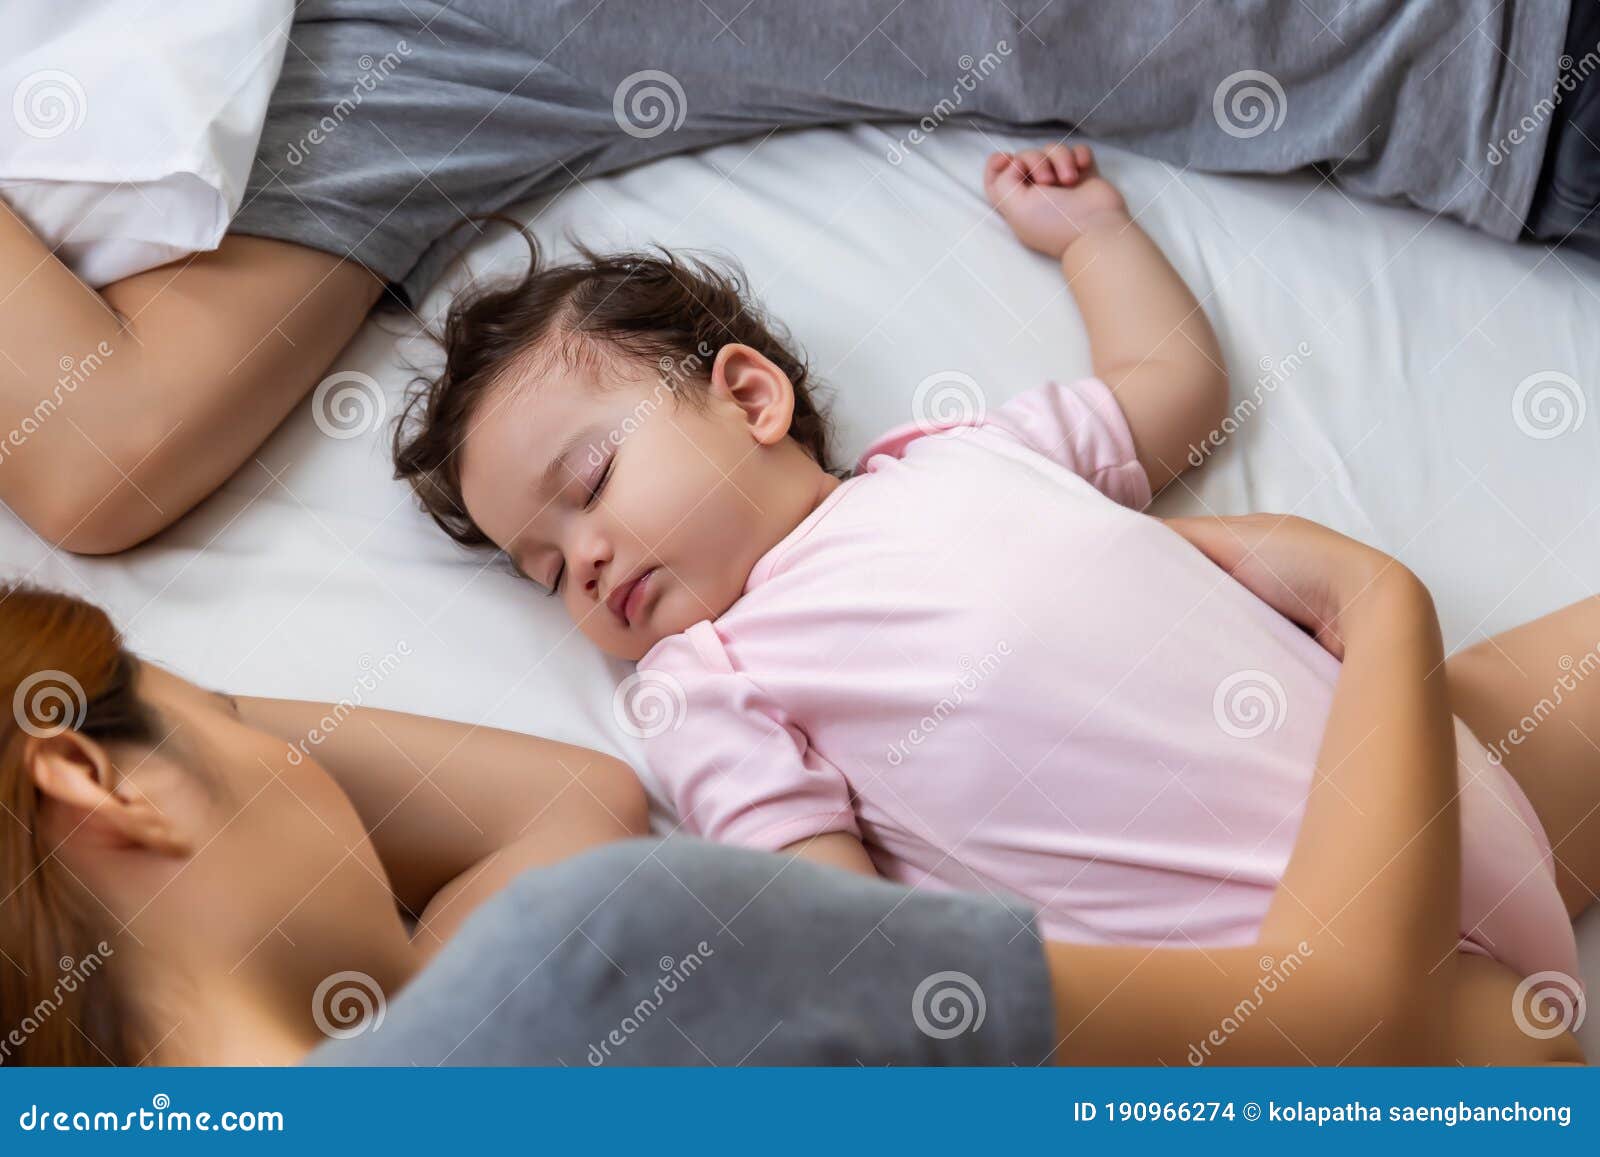 Т спящую мать. Спящие мать. Дети спят обнявшись. Папа обнимает маму и ребёнка и спят.